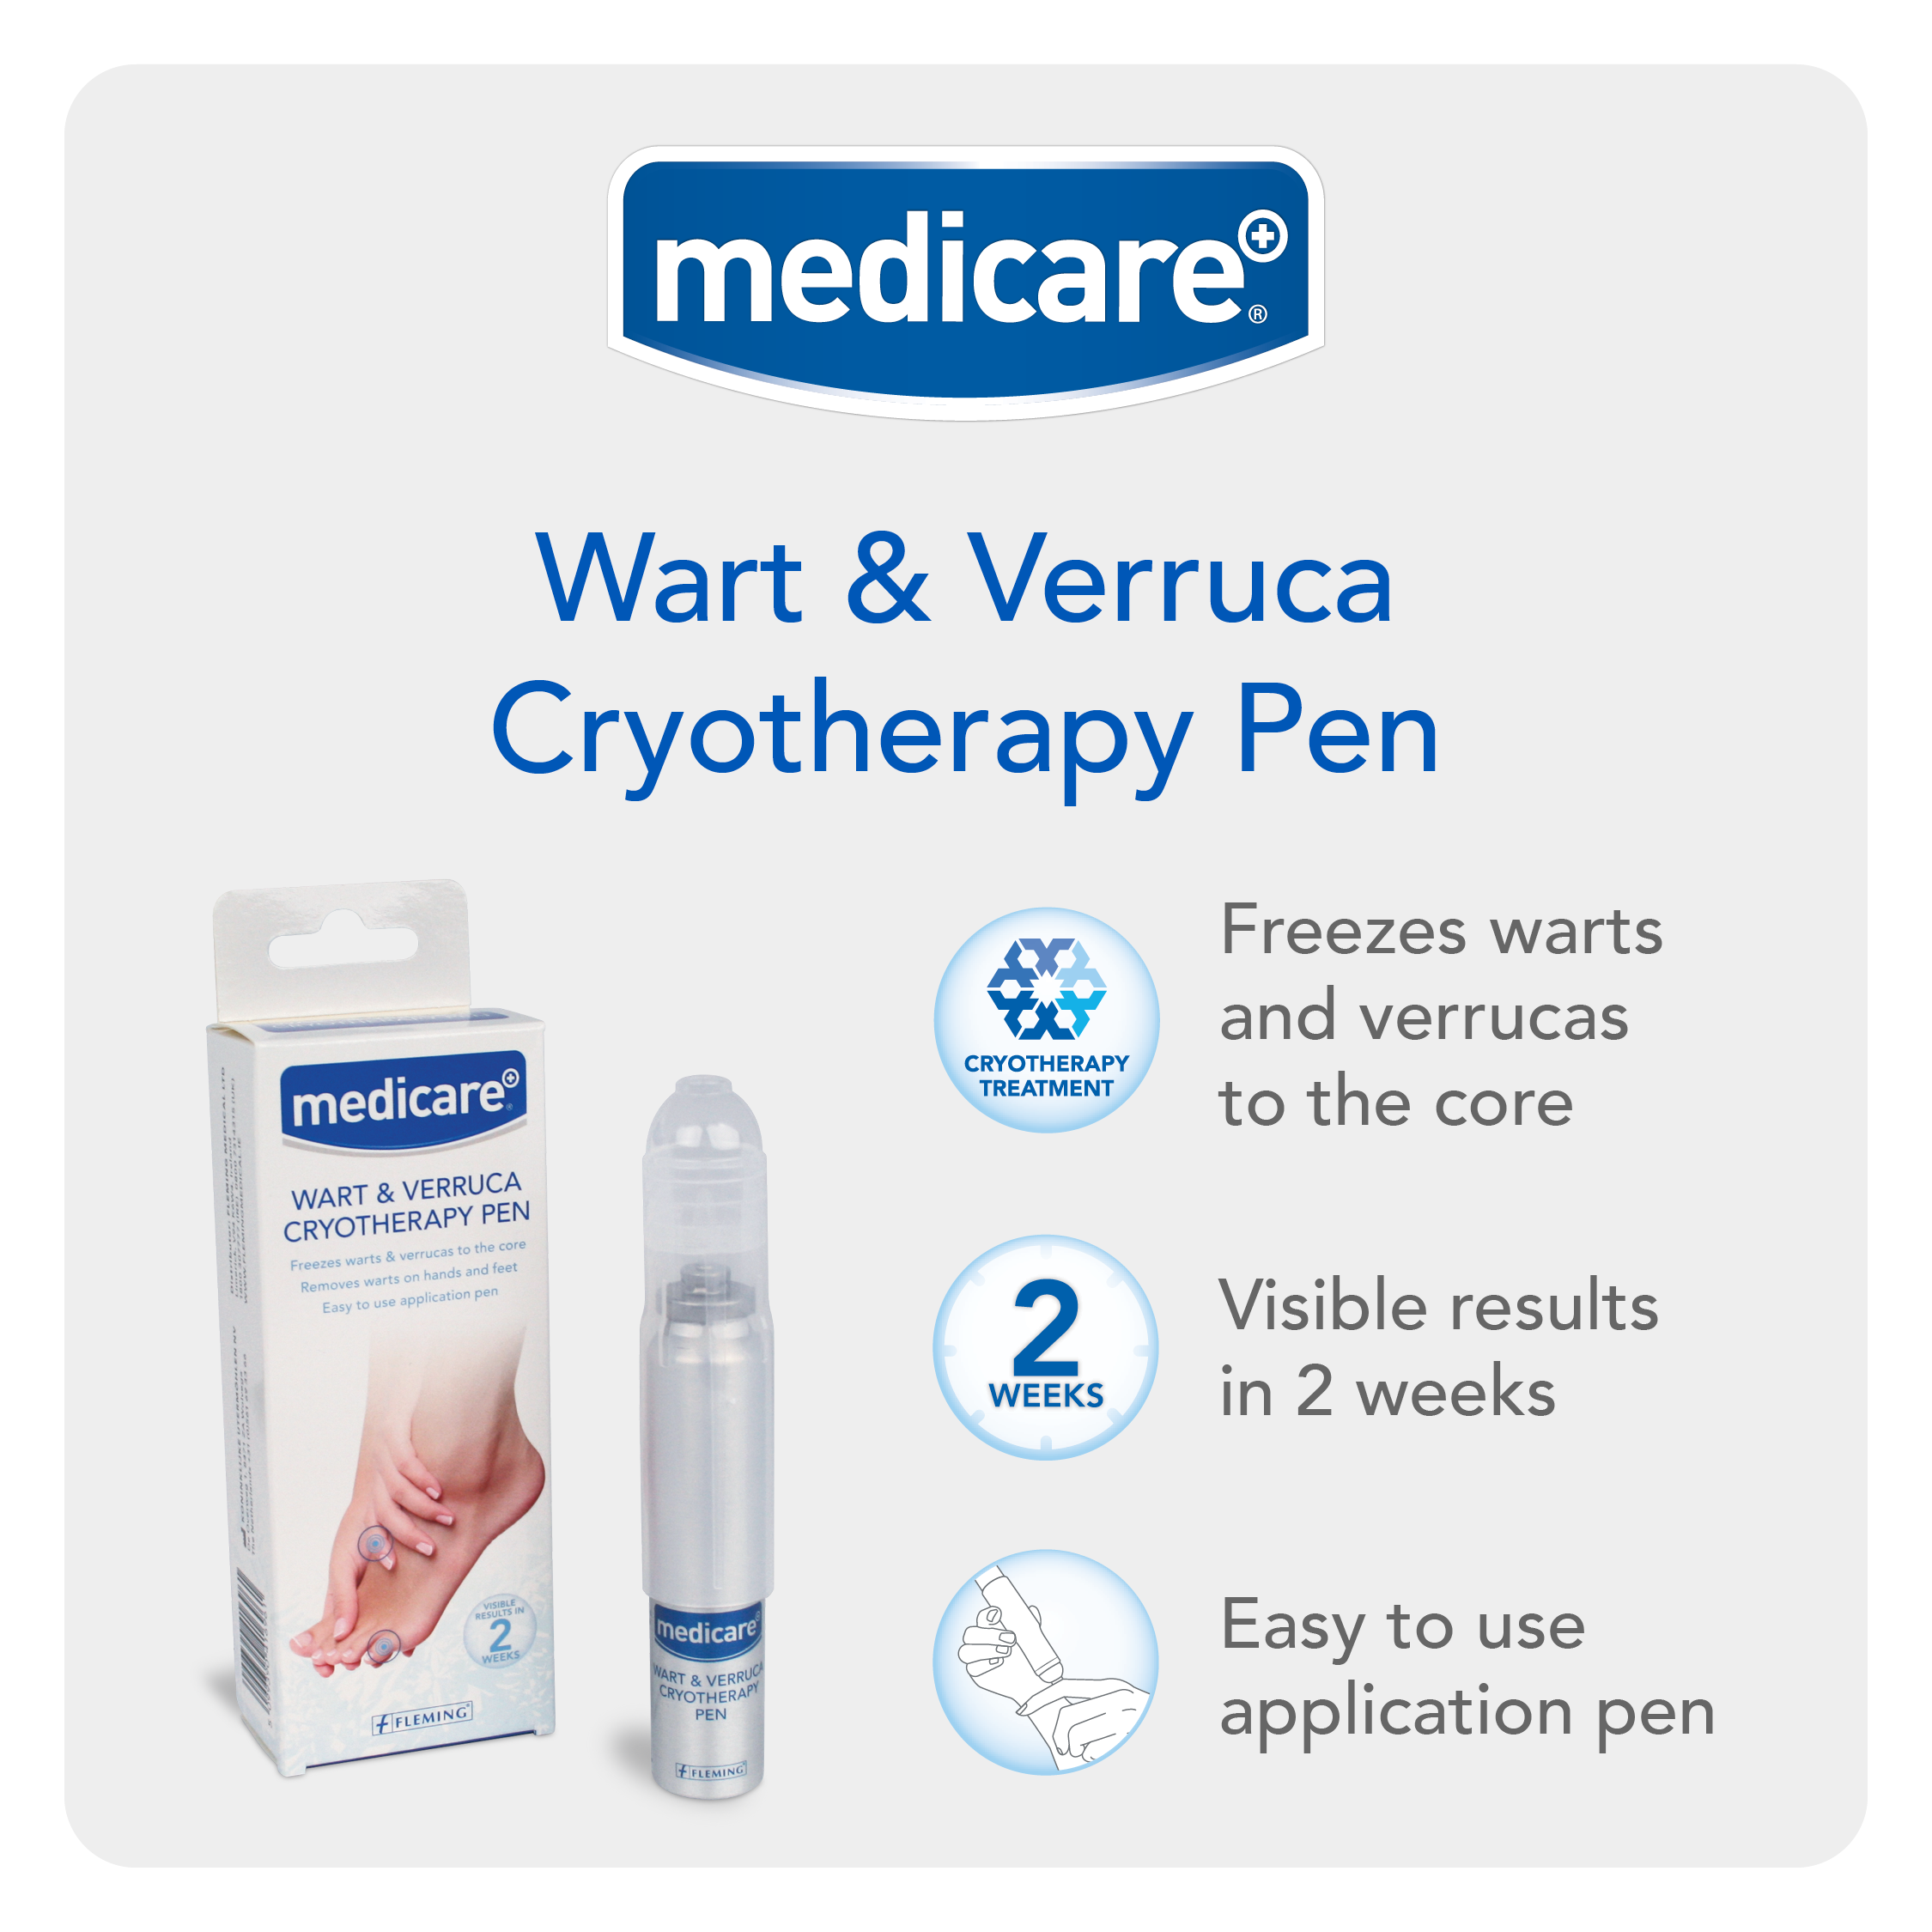 Medicare Wart & Verruca Cryotherapy Pen